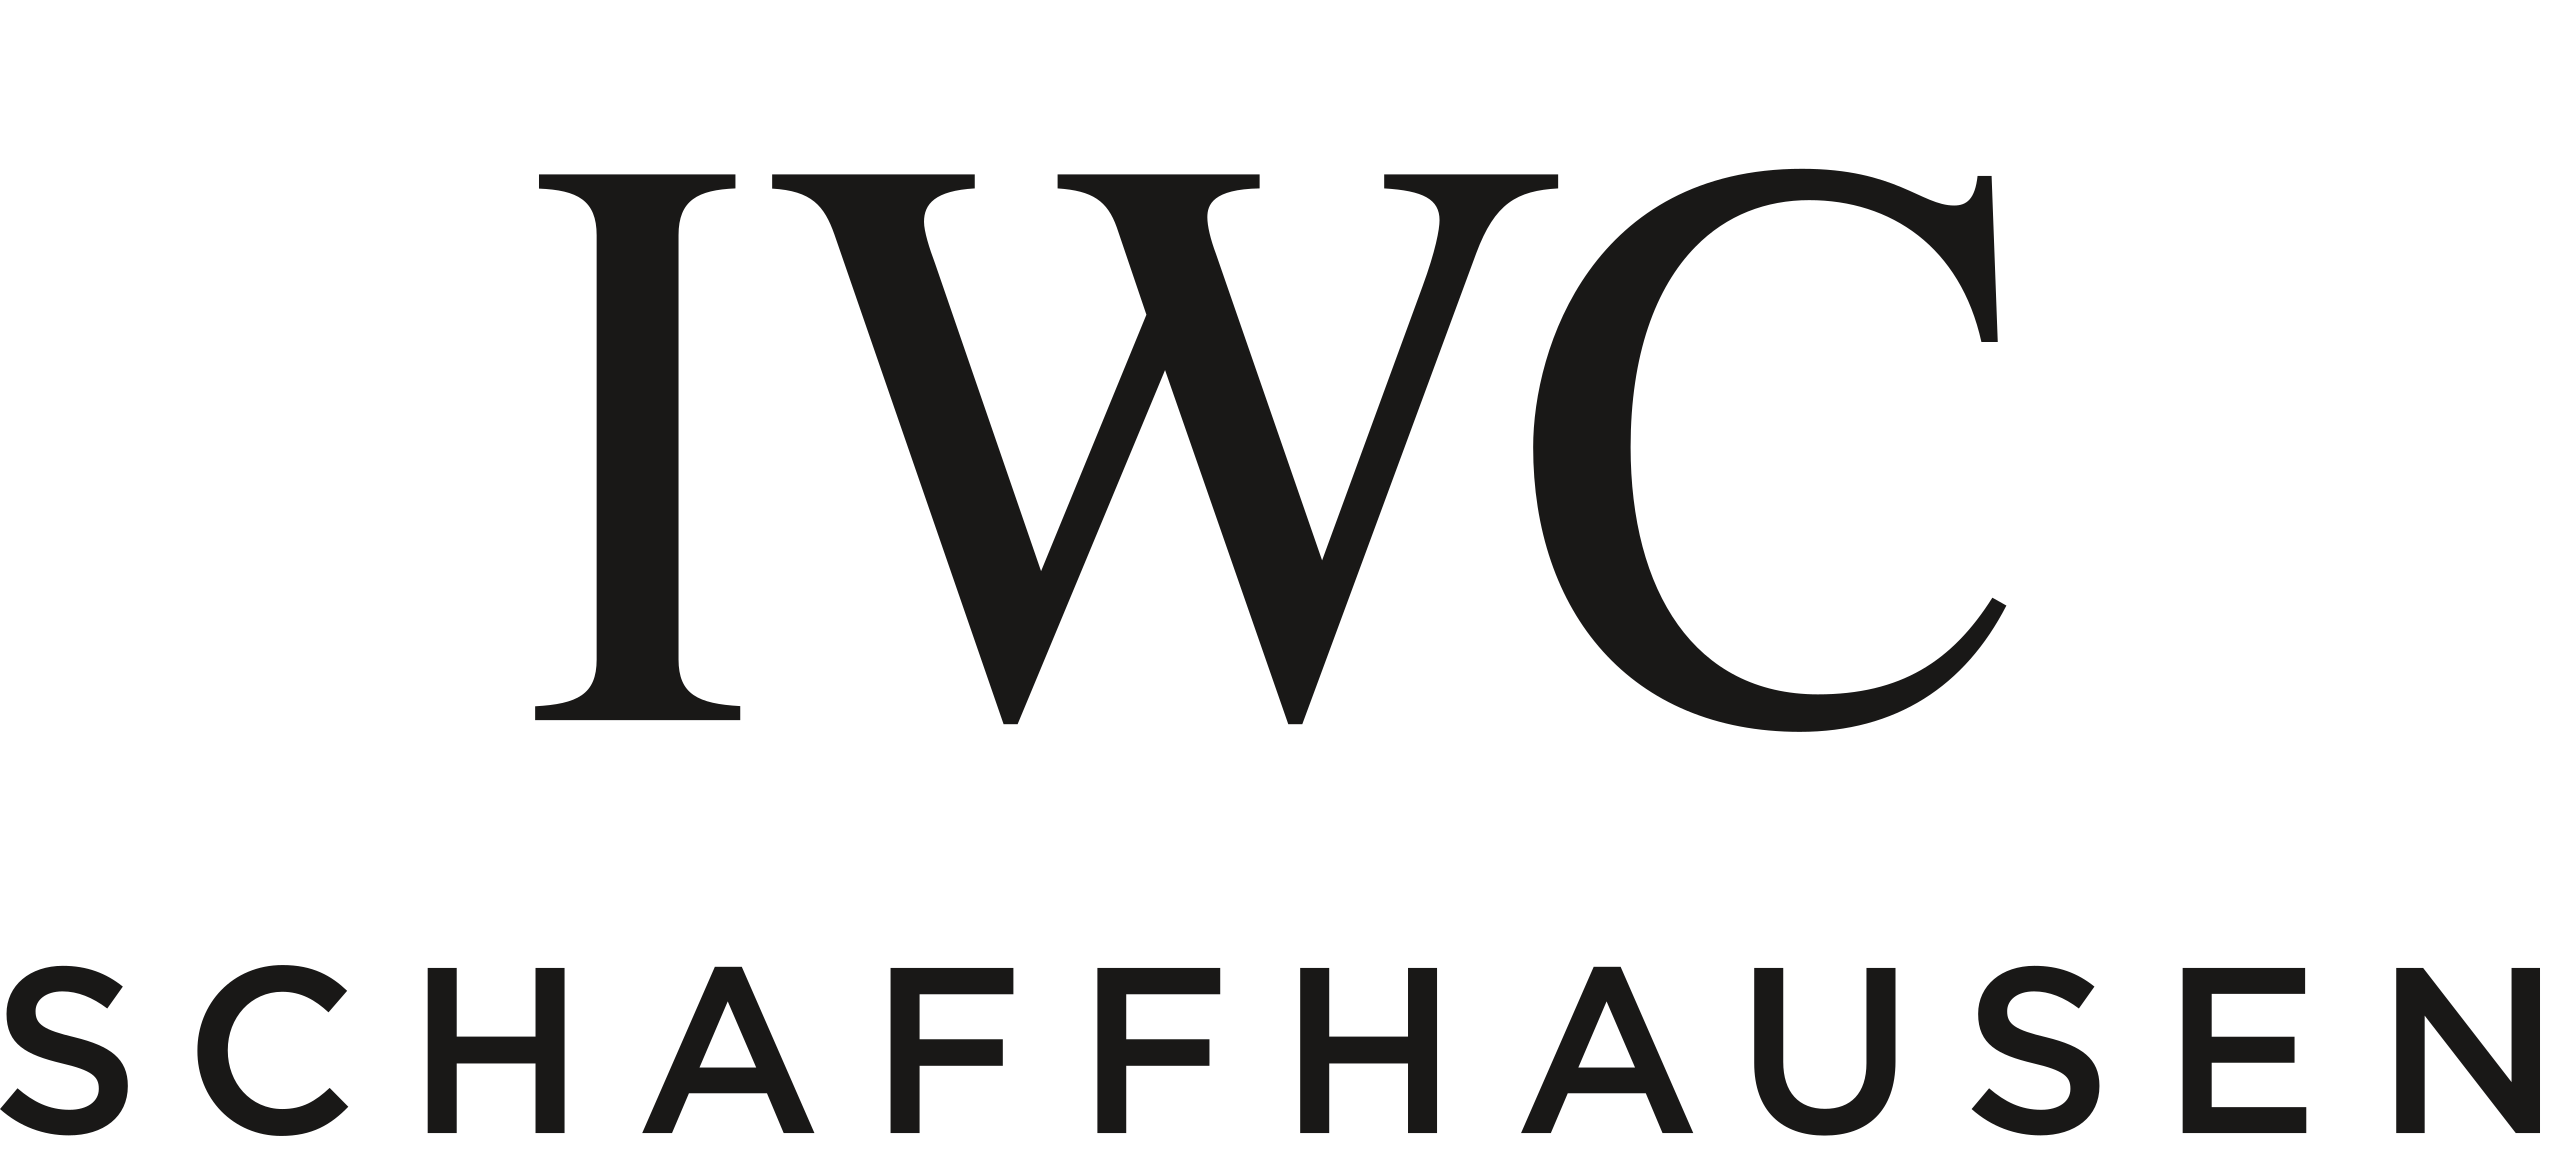 Numer telefonu IWC Schaffhausen